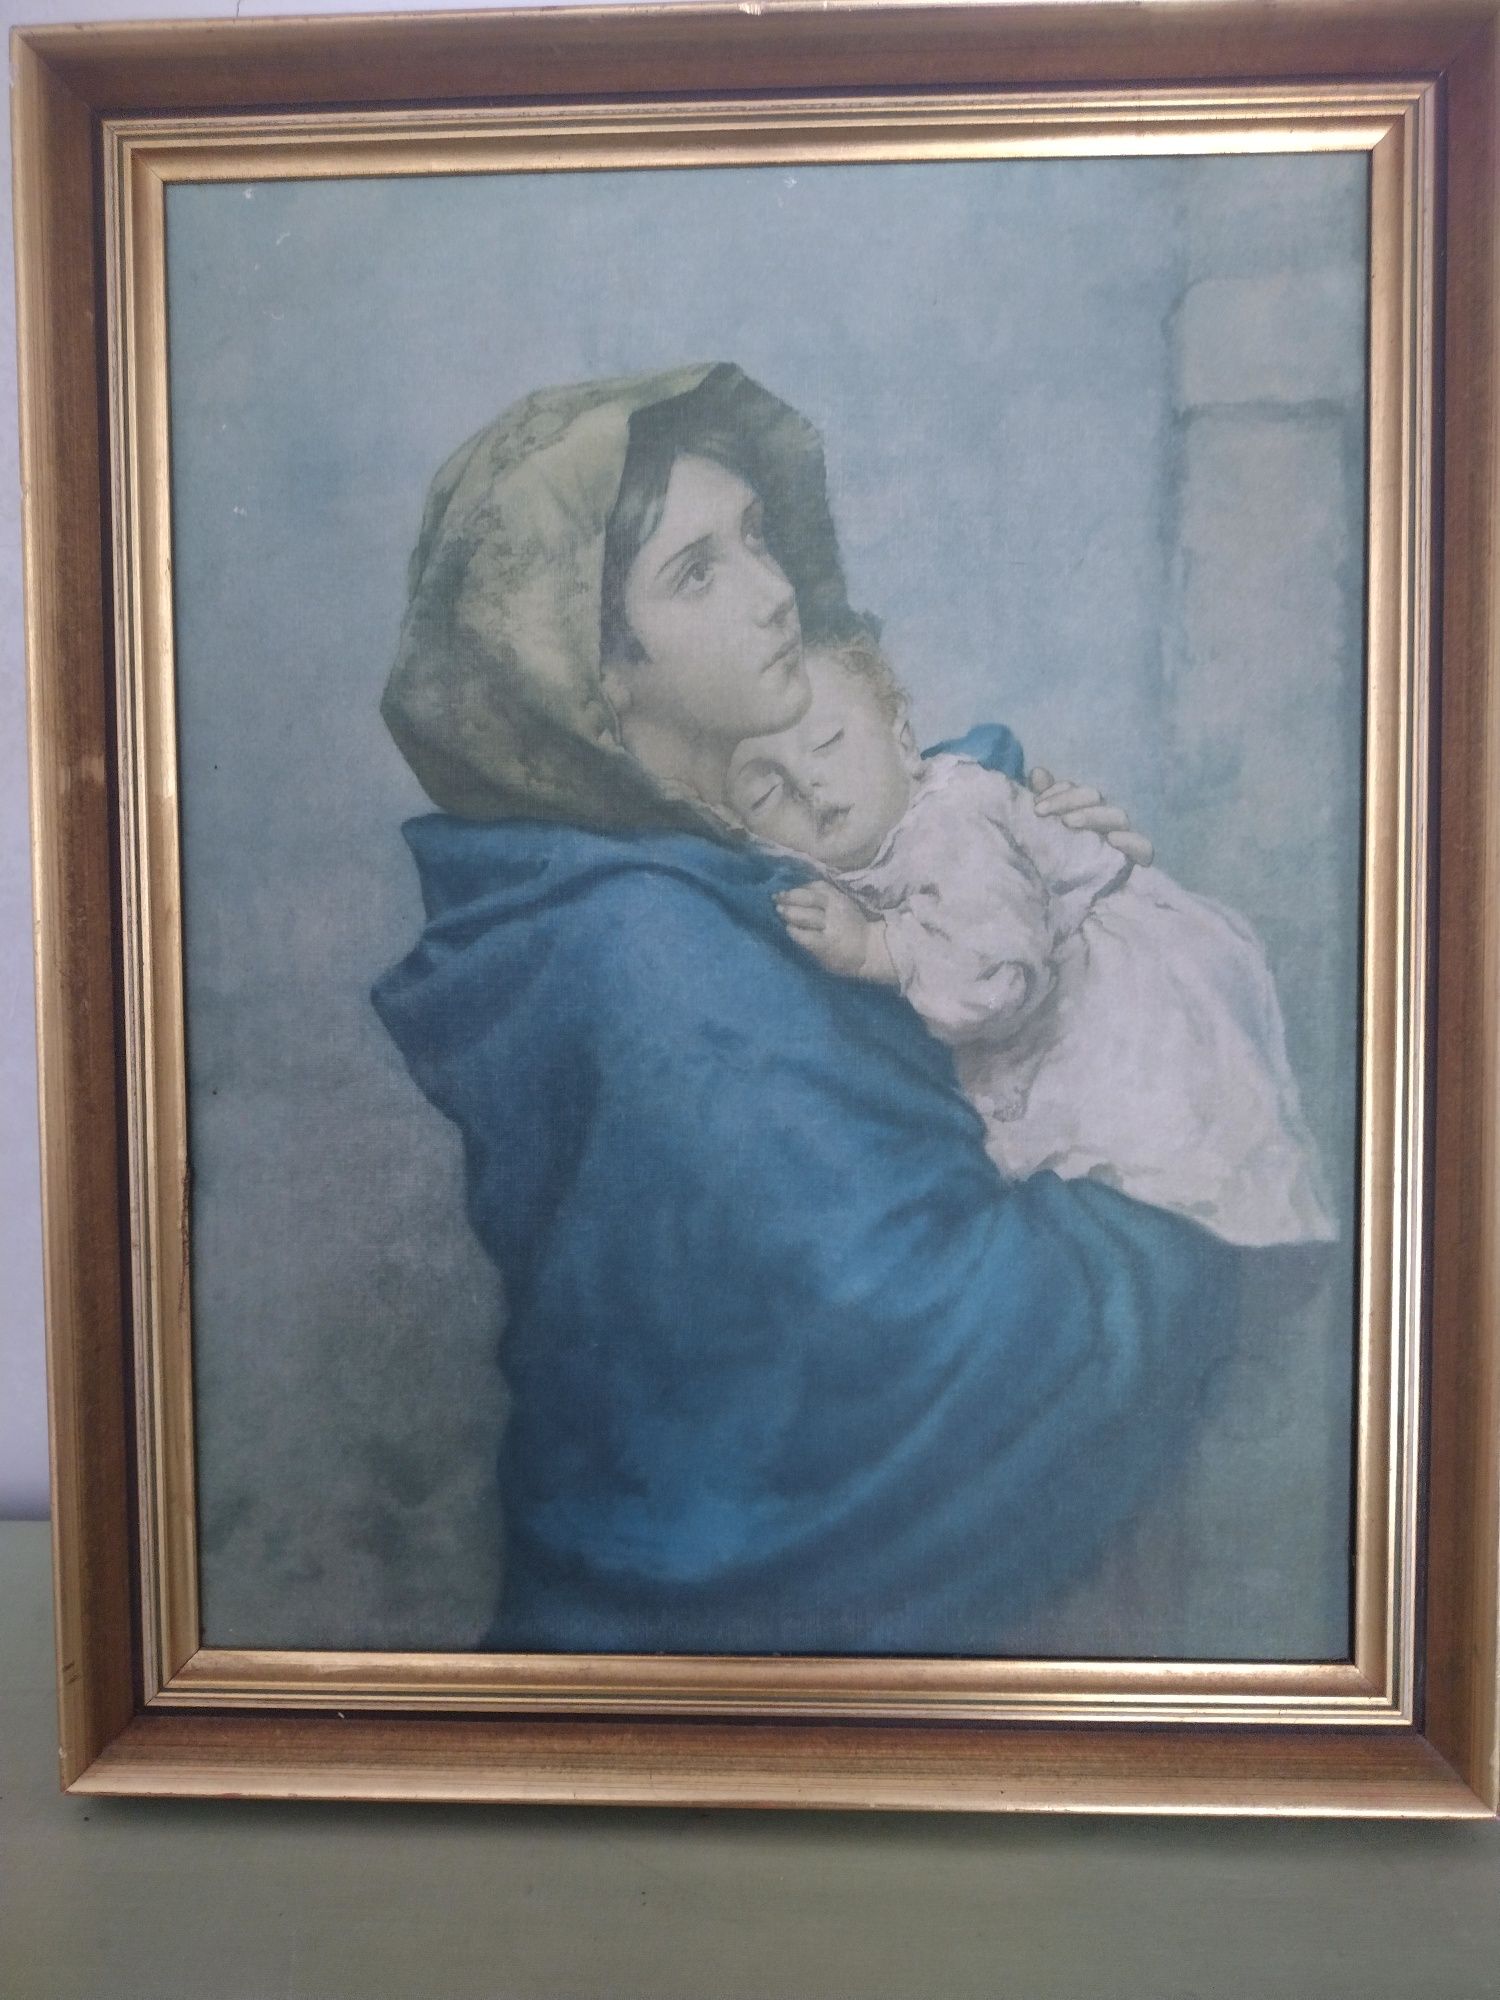 Obraz sakralny (oleodruk) Maria z Dzieciątkiem